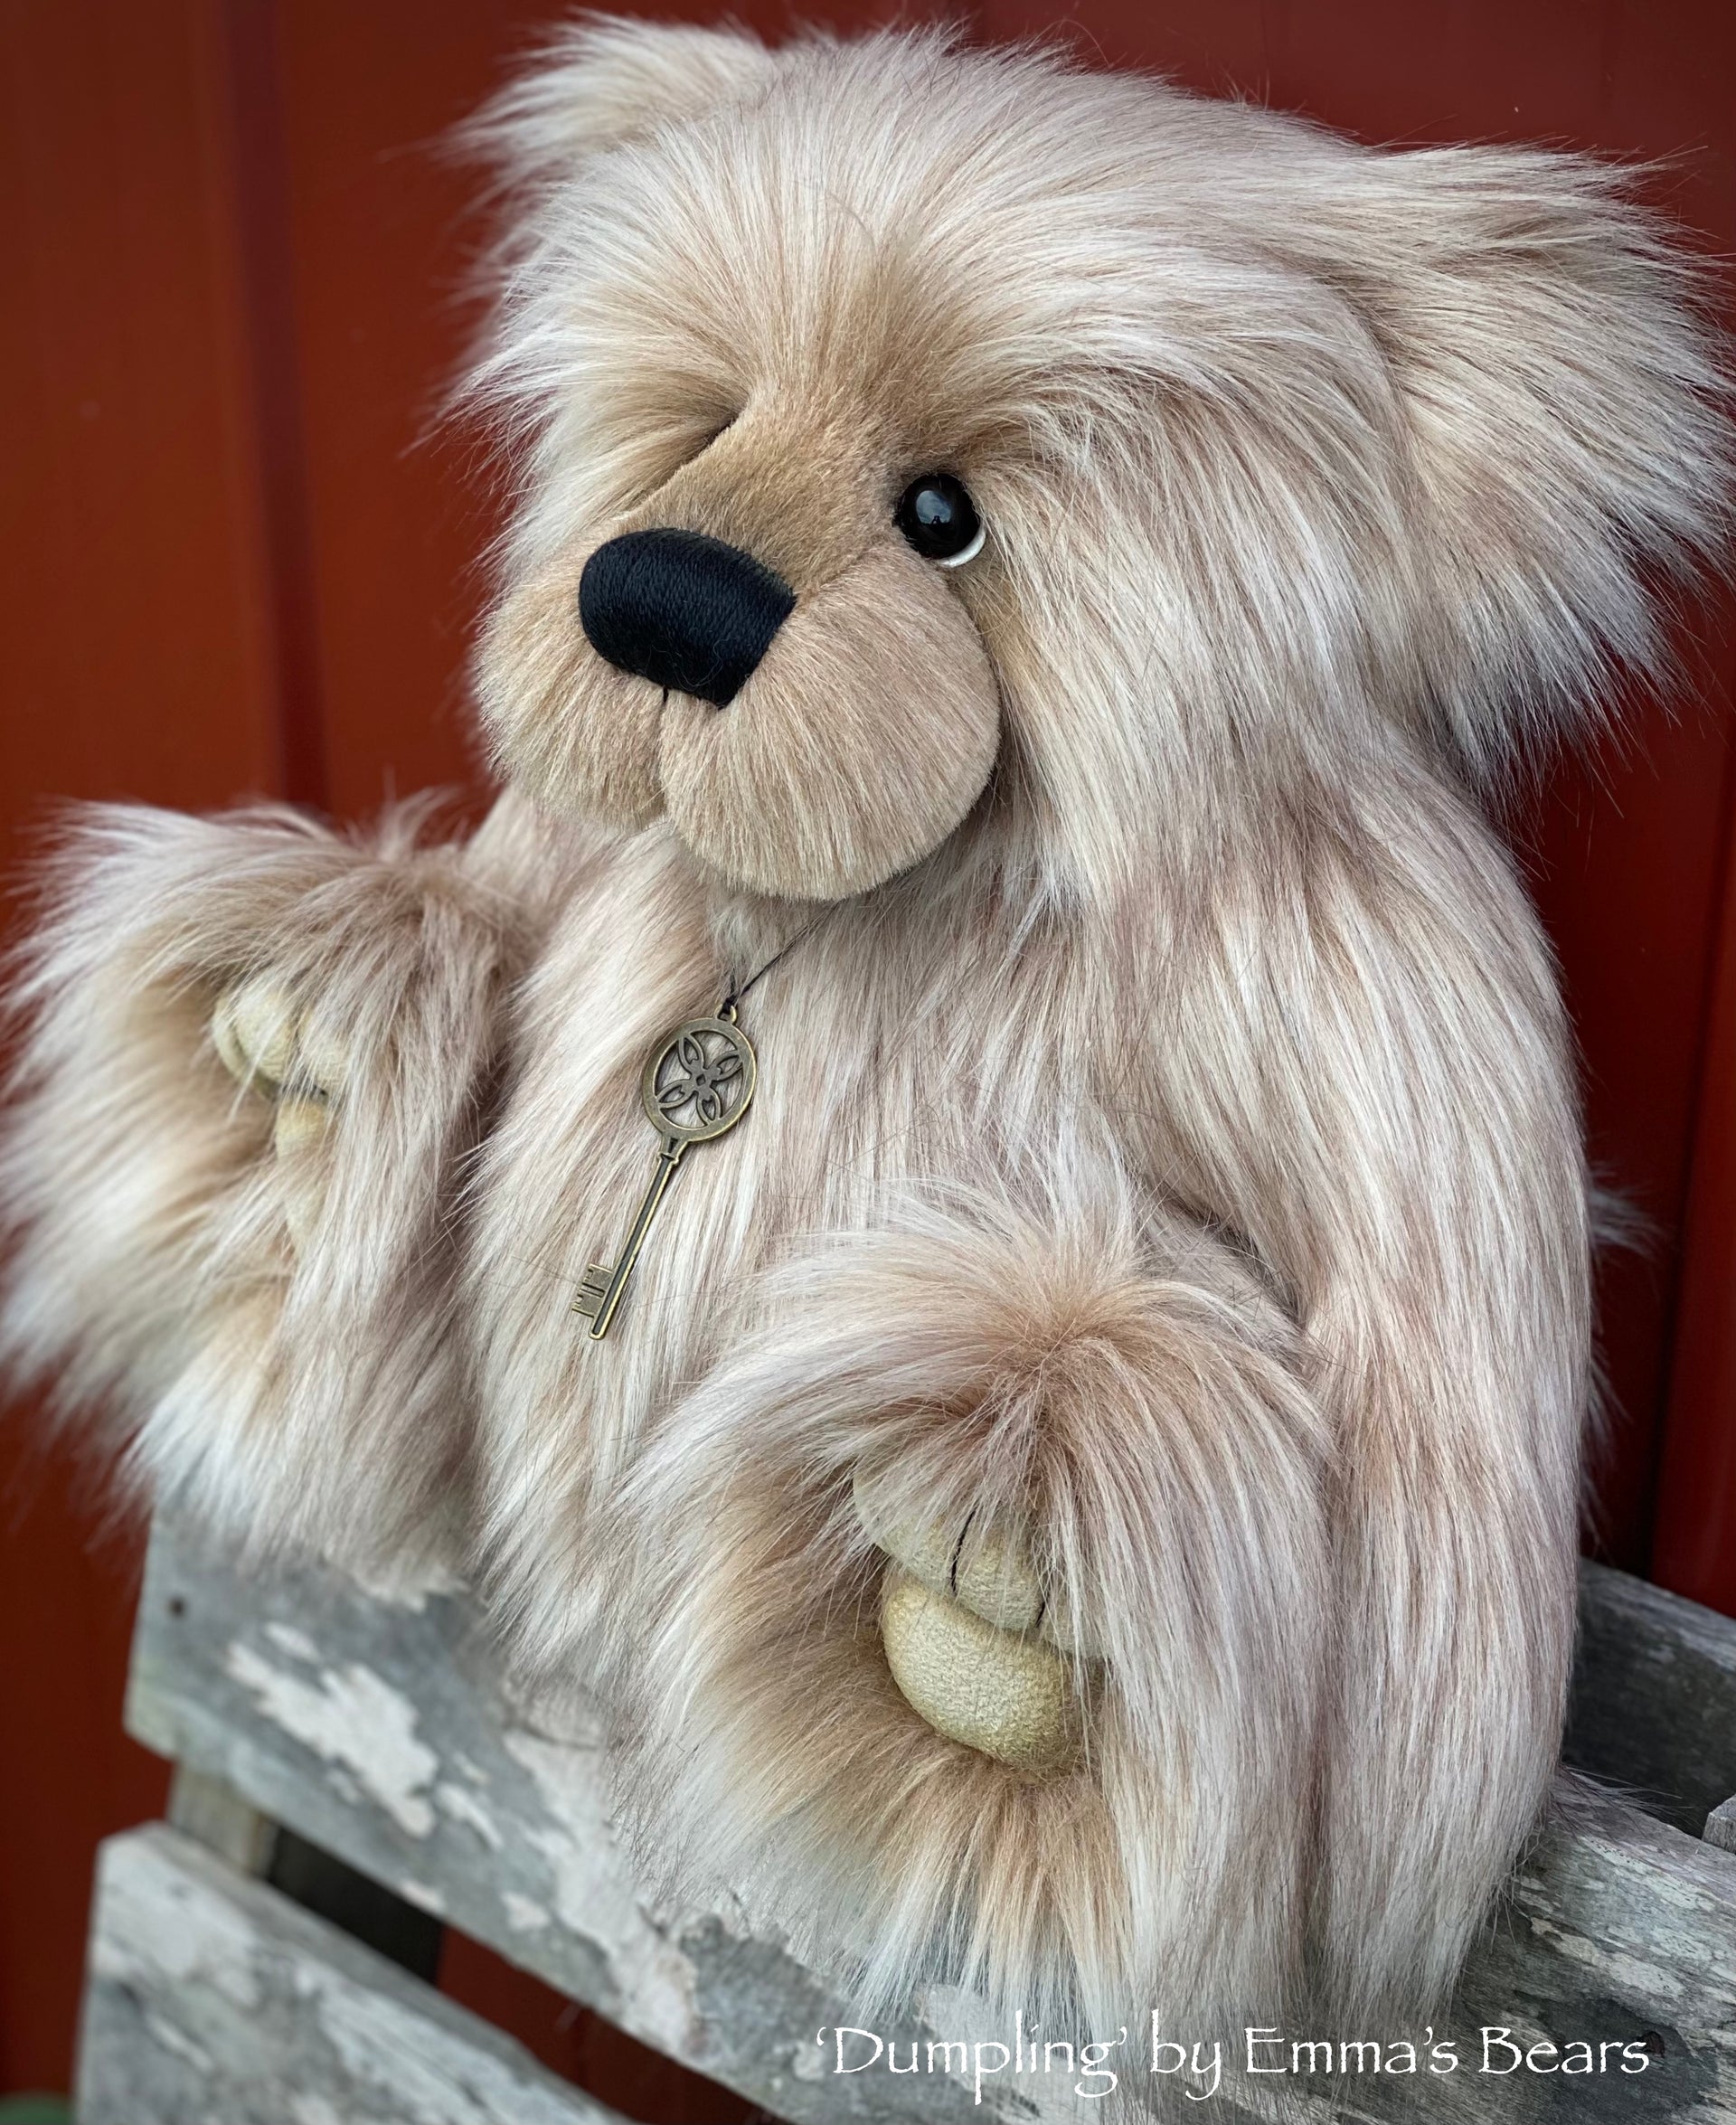 KIT - 16" DUMPLING bear in Warm Latte faux fur